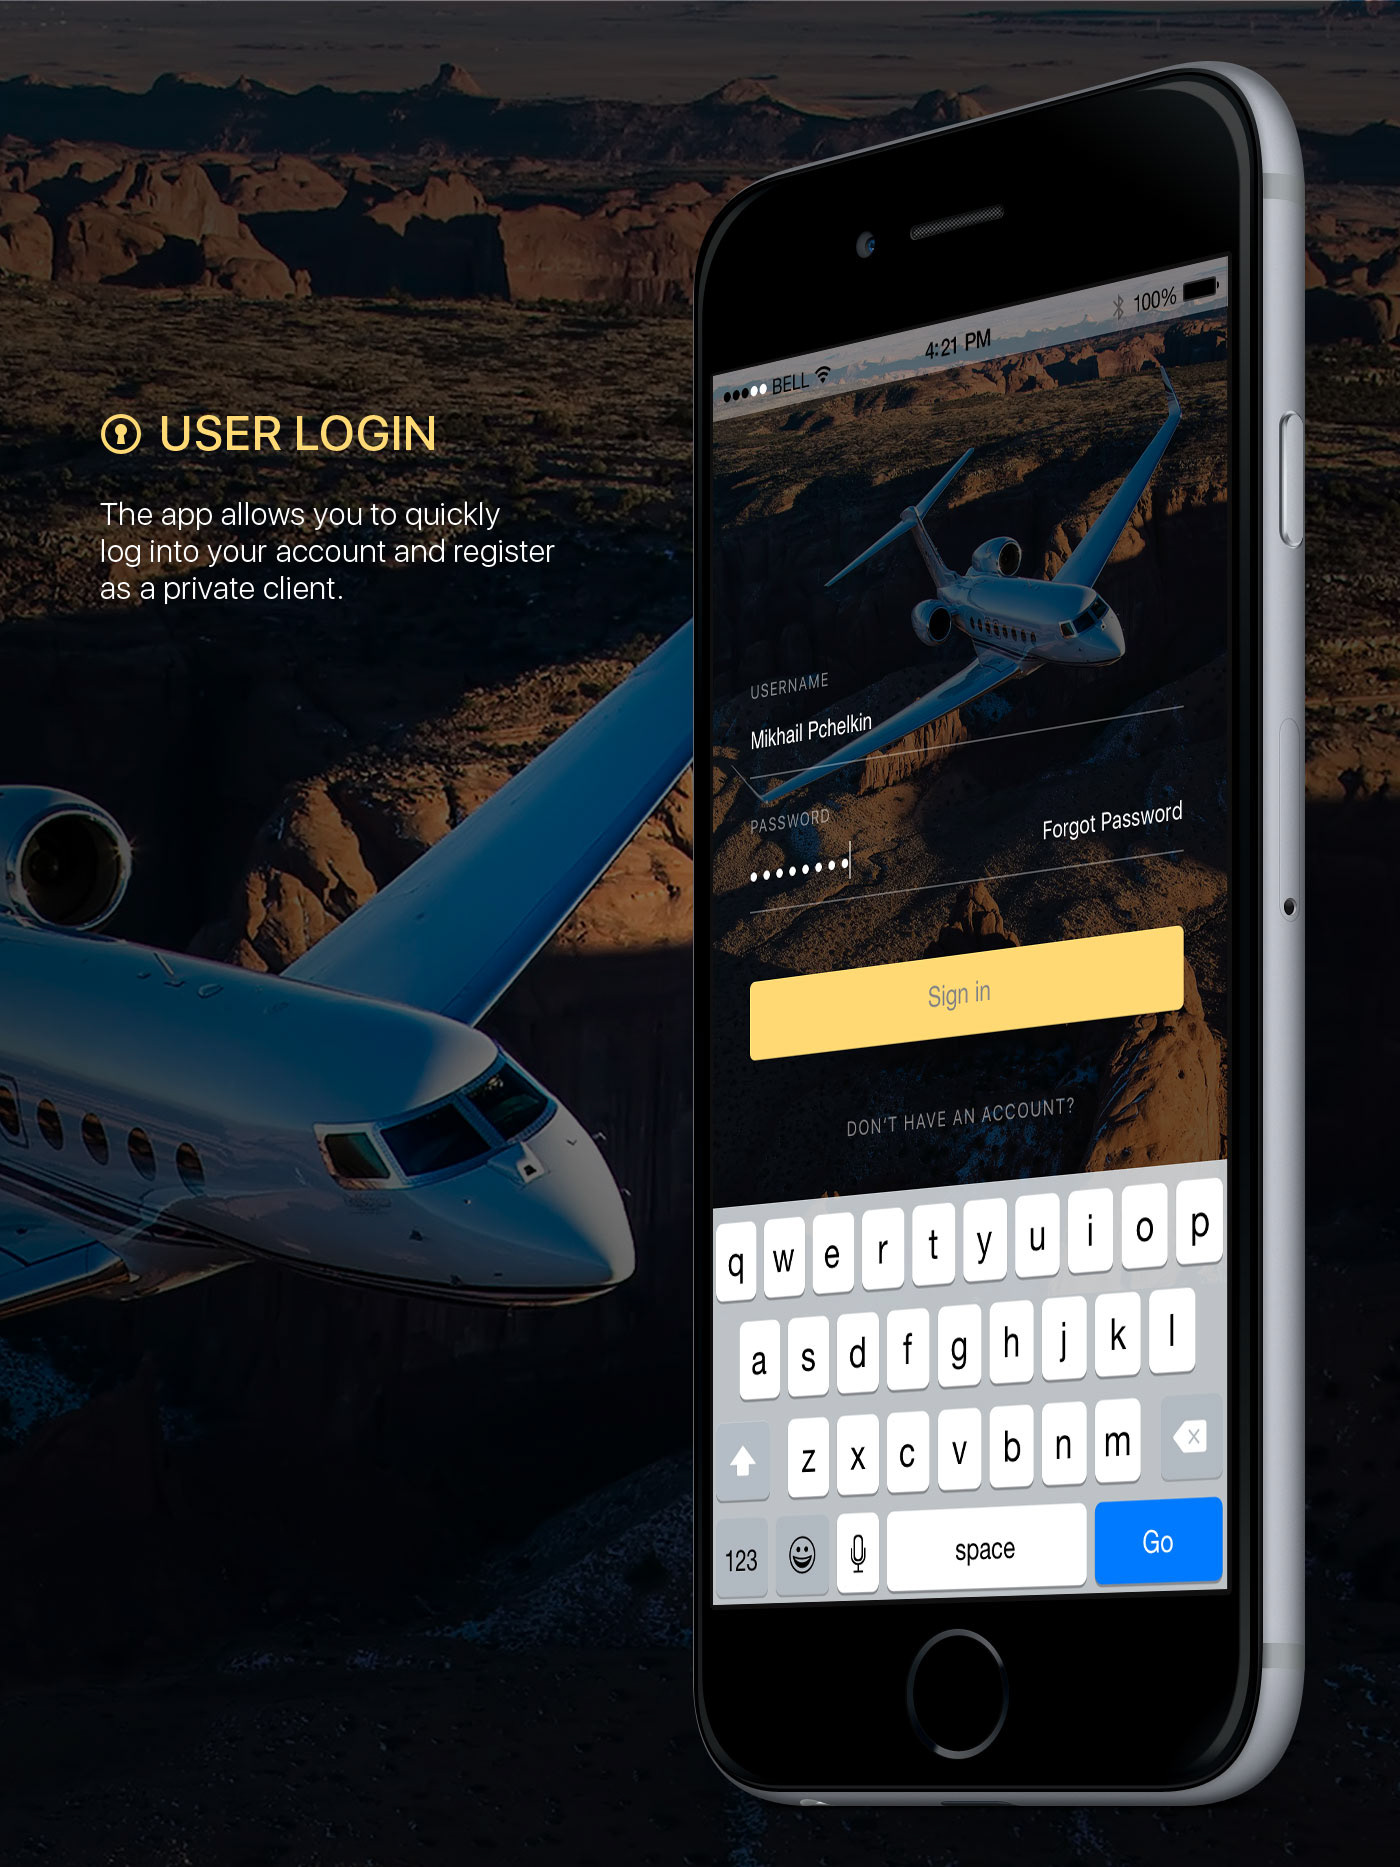 UI ux mobile flat app Mockup messenger iphone Jet jets air SKY broker ios luxury